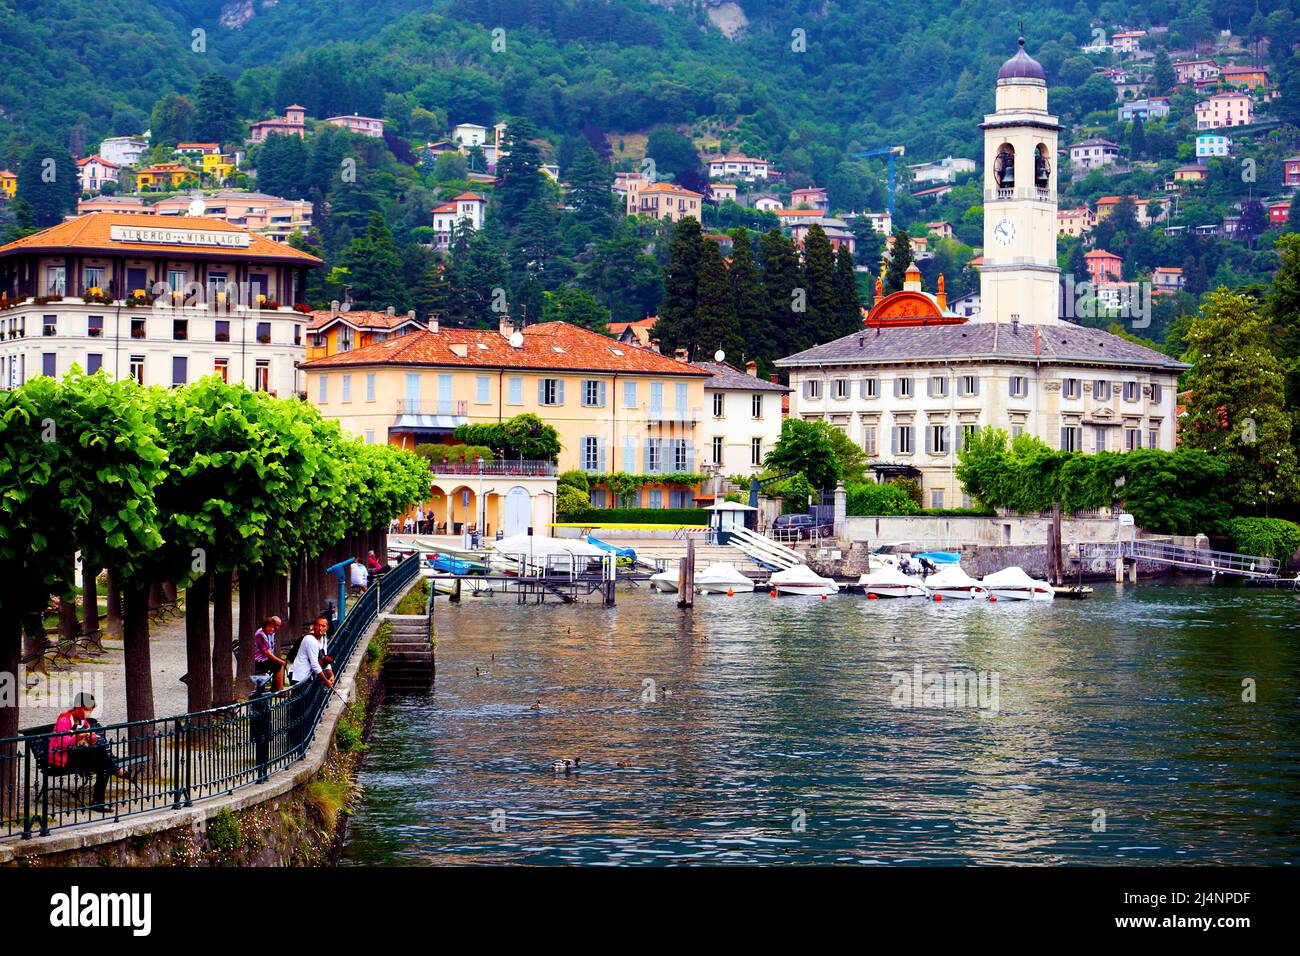 Il villaggio di Cernobbio sulle rive del lago di Como in Italia settentrionale Foto Stock